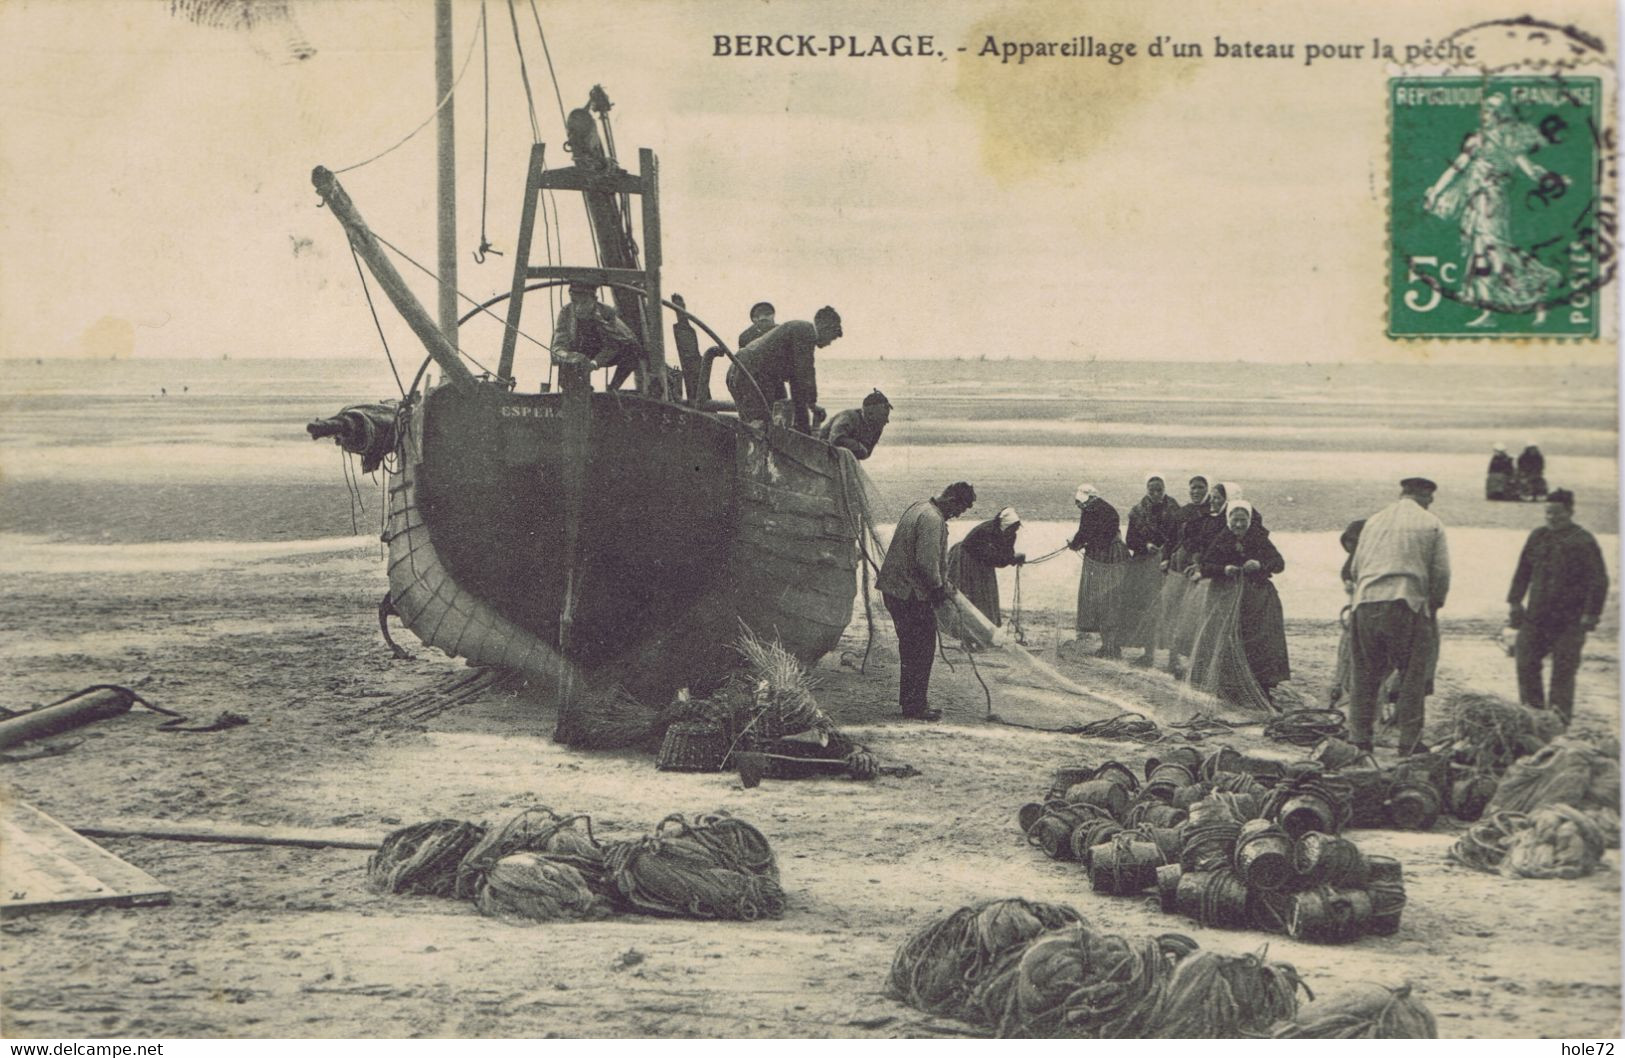 62 - Berck-Plage (Pas-de-Calais) - Appareillage D'un Bateau Pour La Pêche - Lens